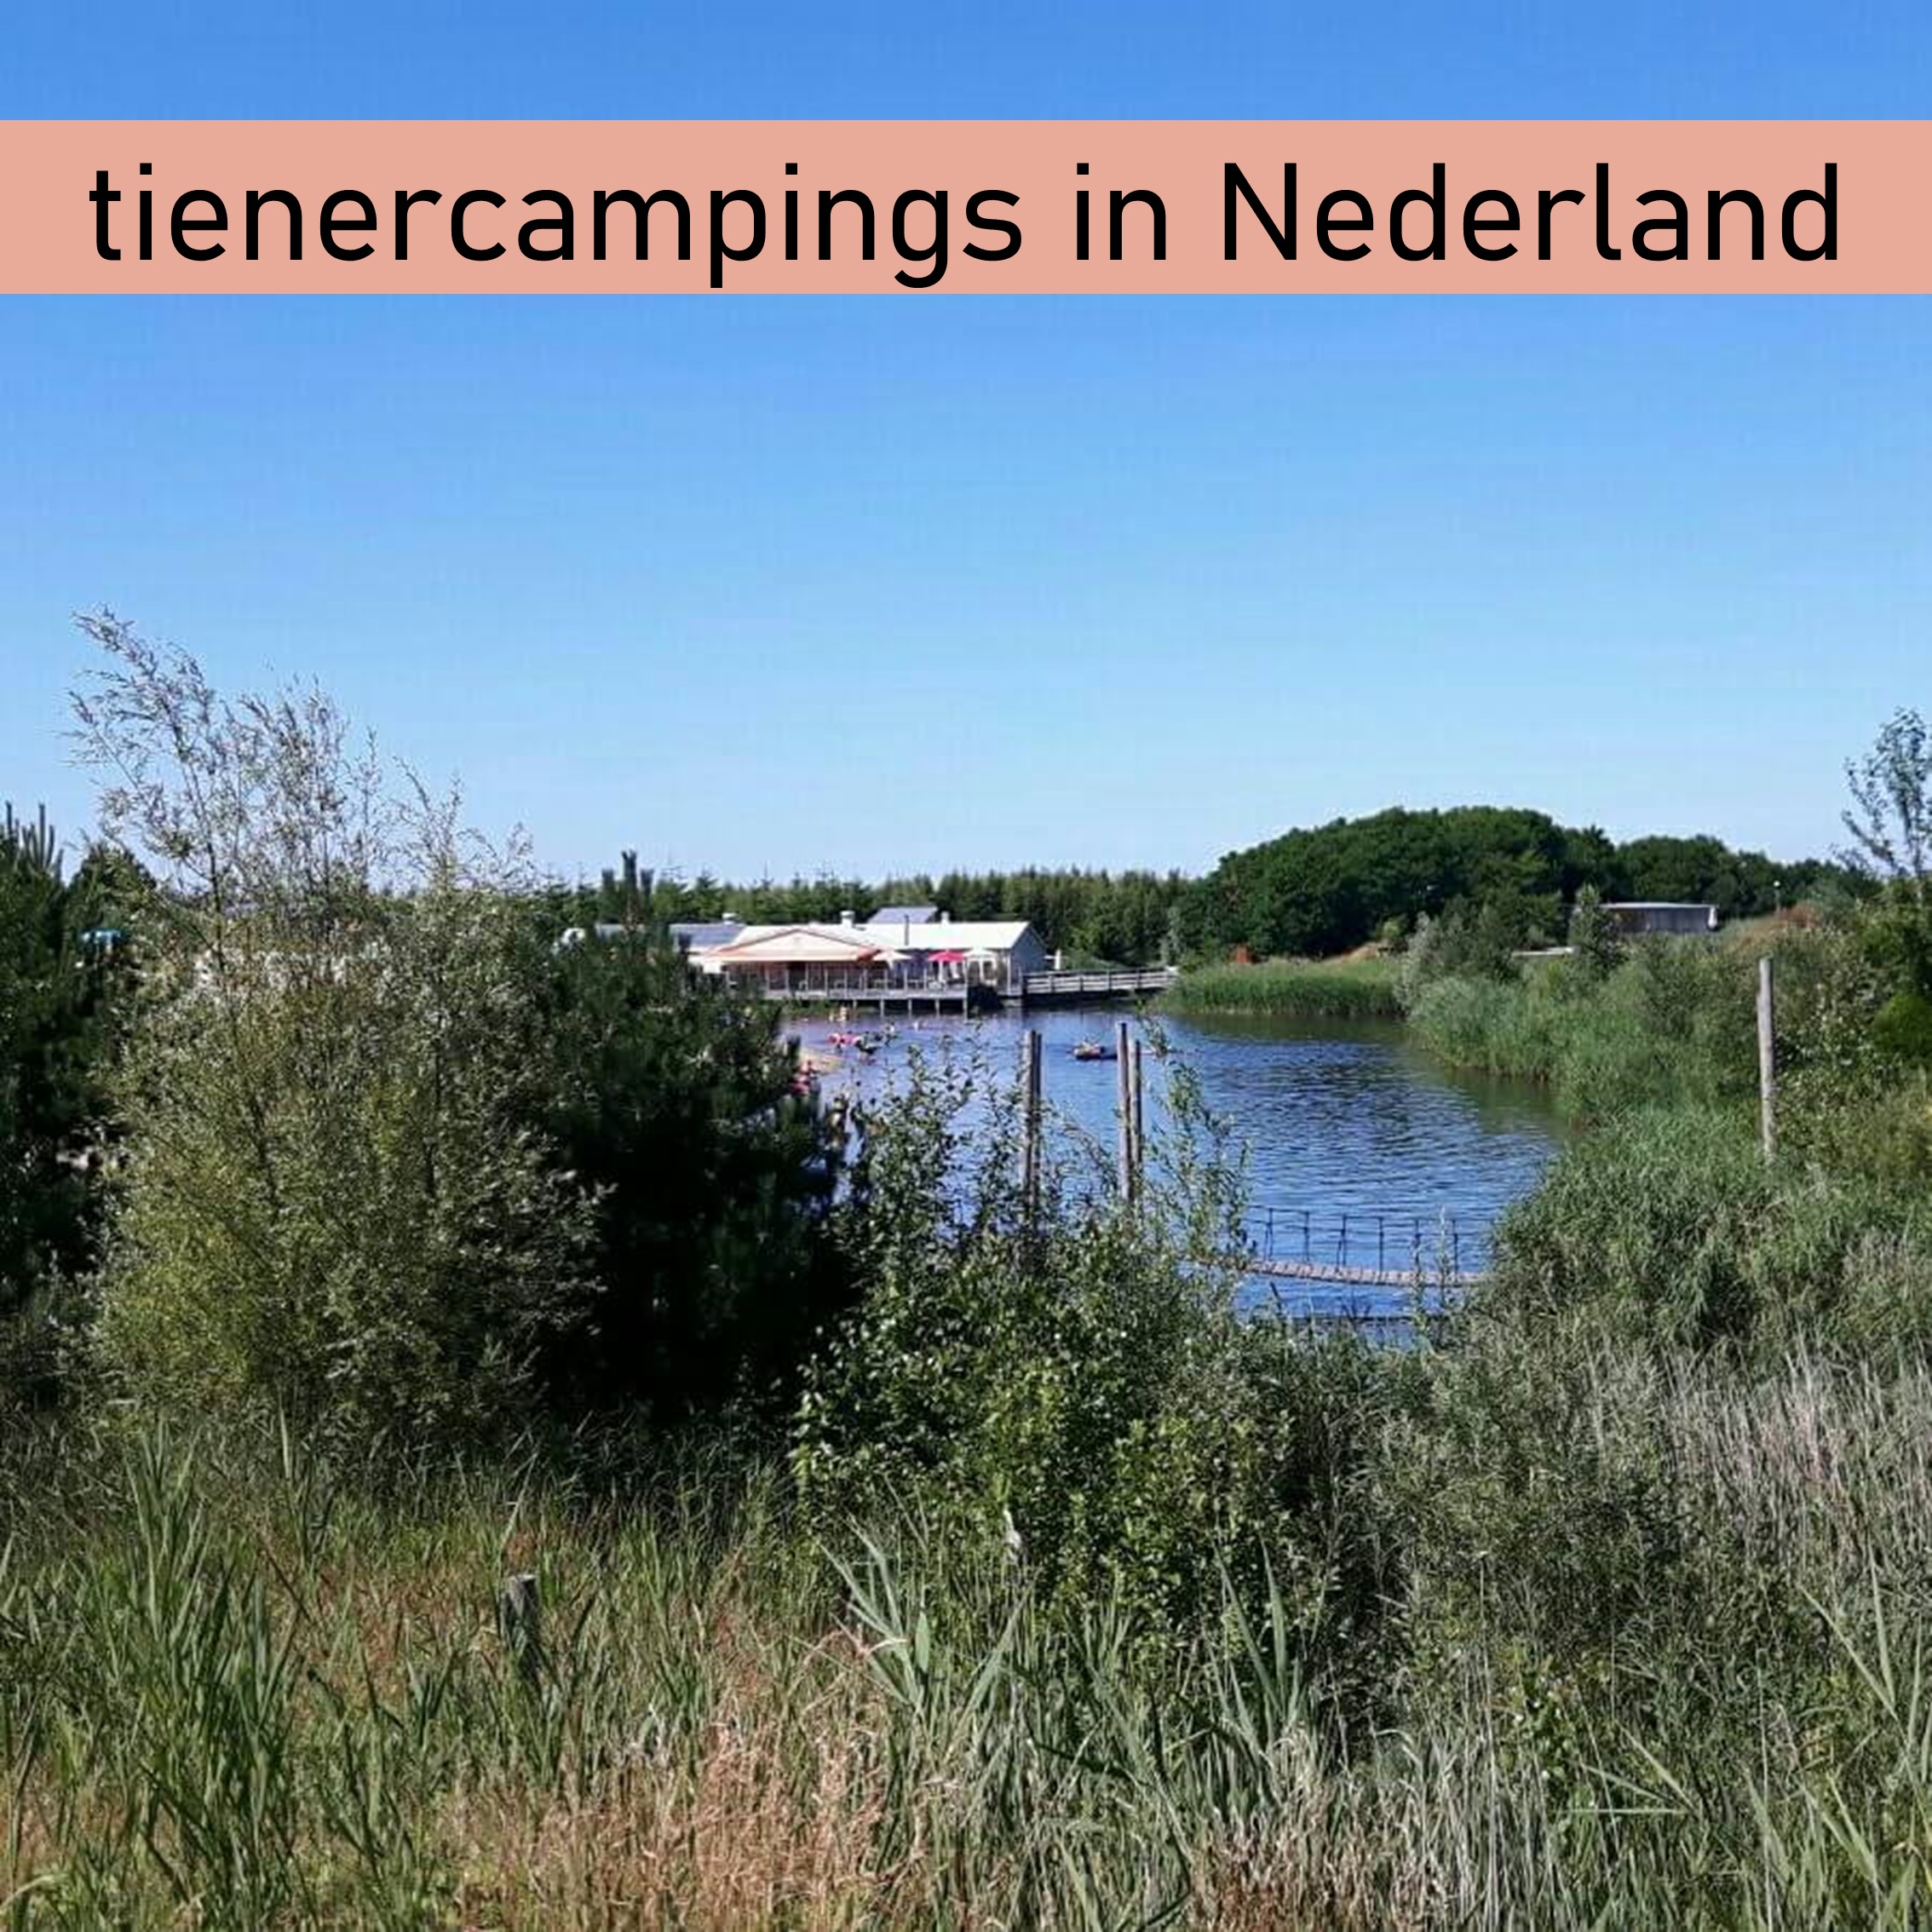 101 camping tips voor tieners in Nederland, die ook leuk zijn voor ouders